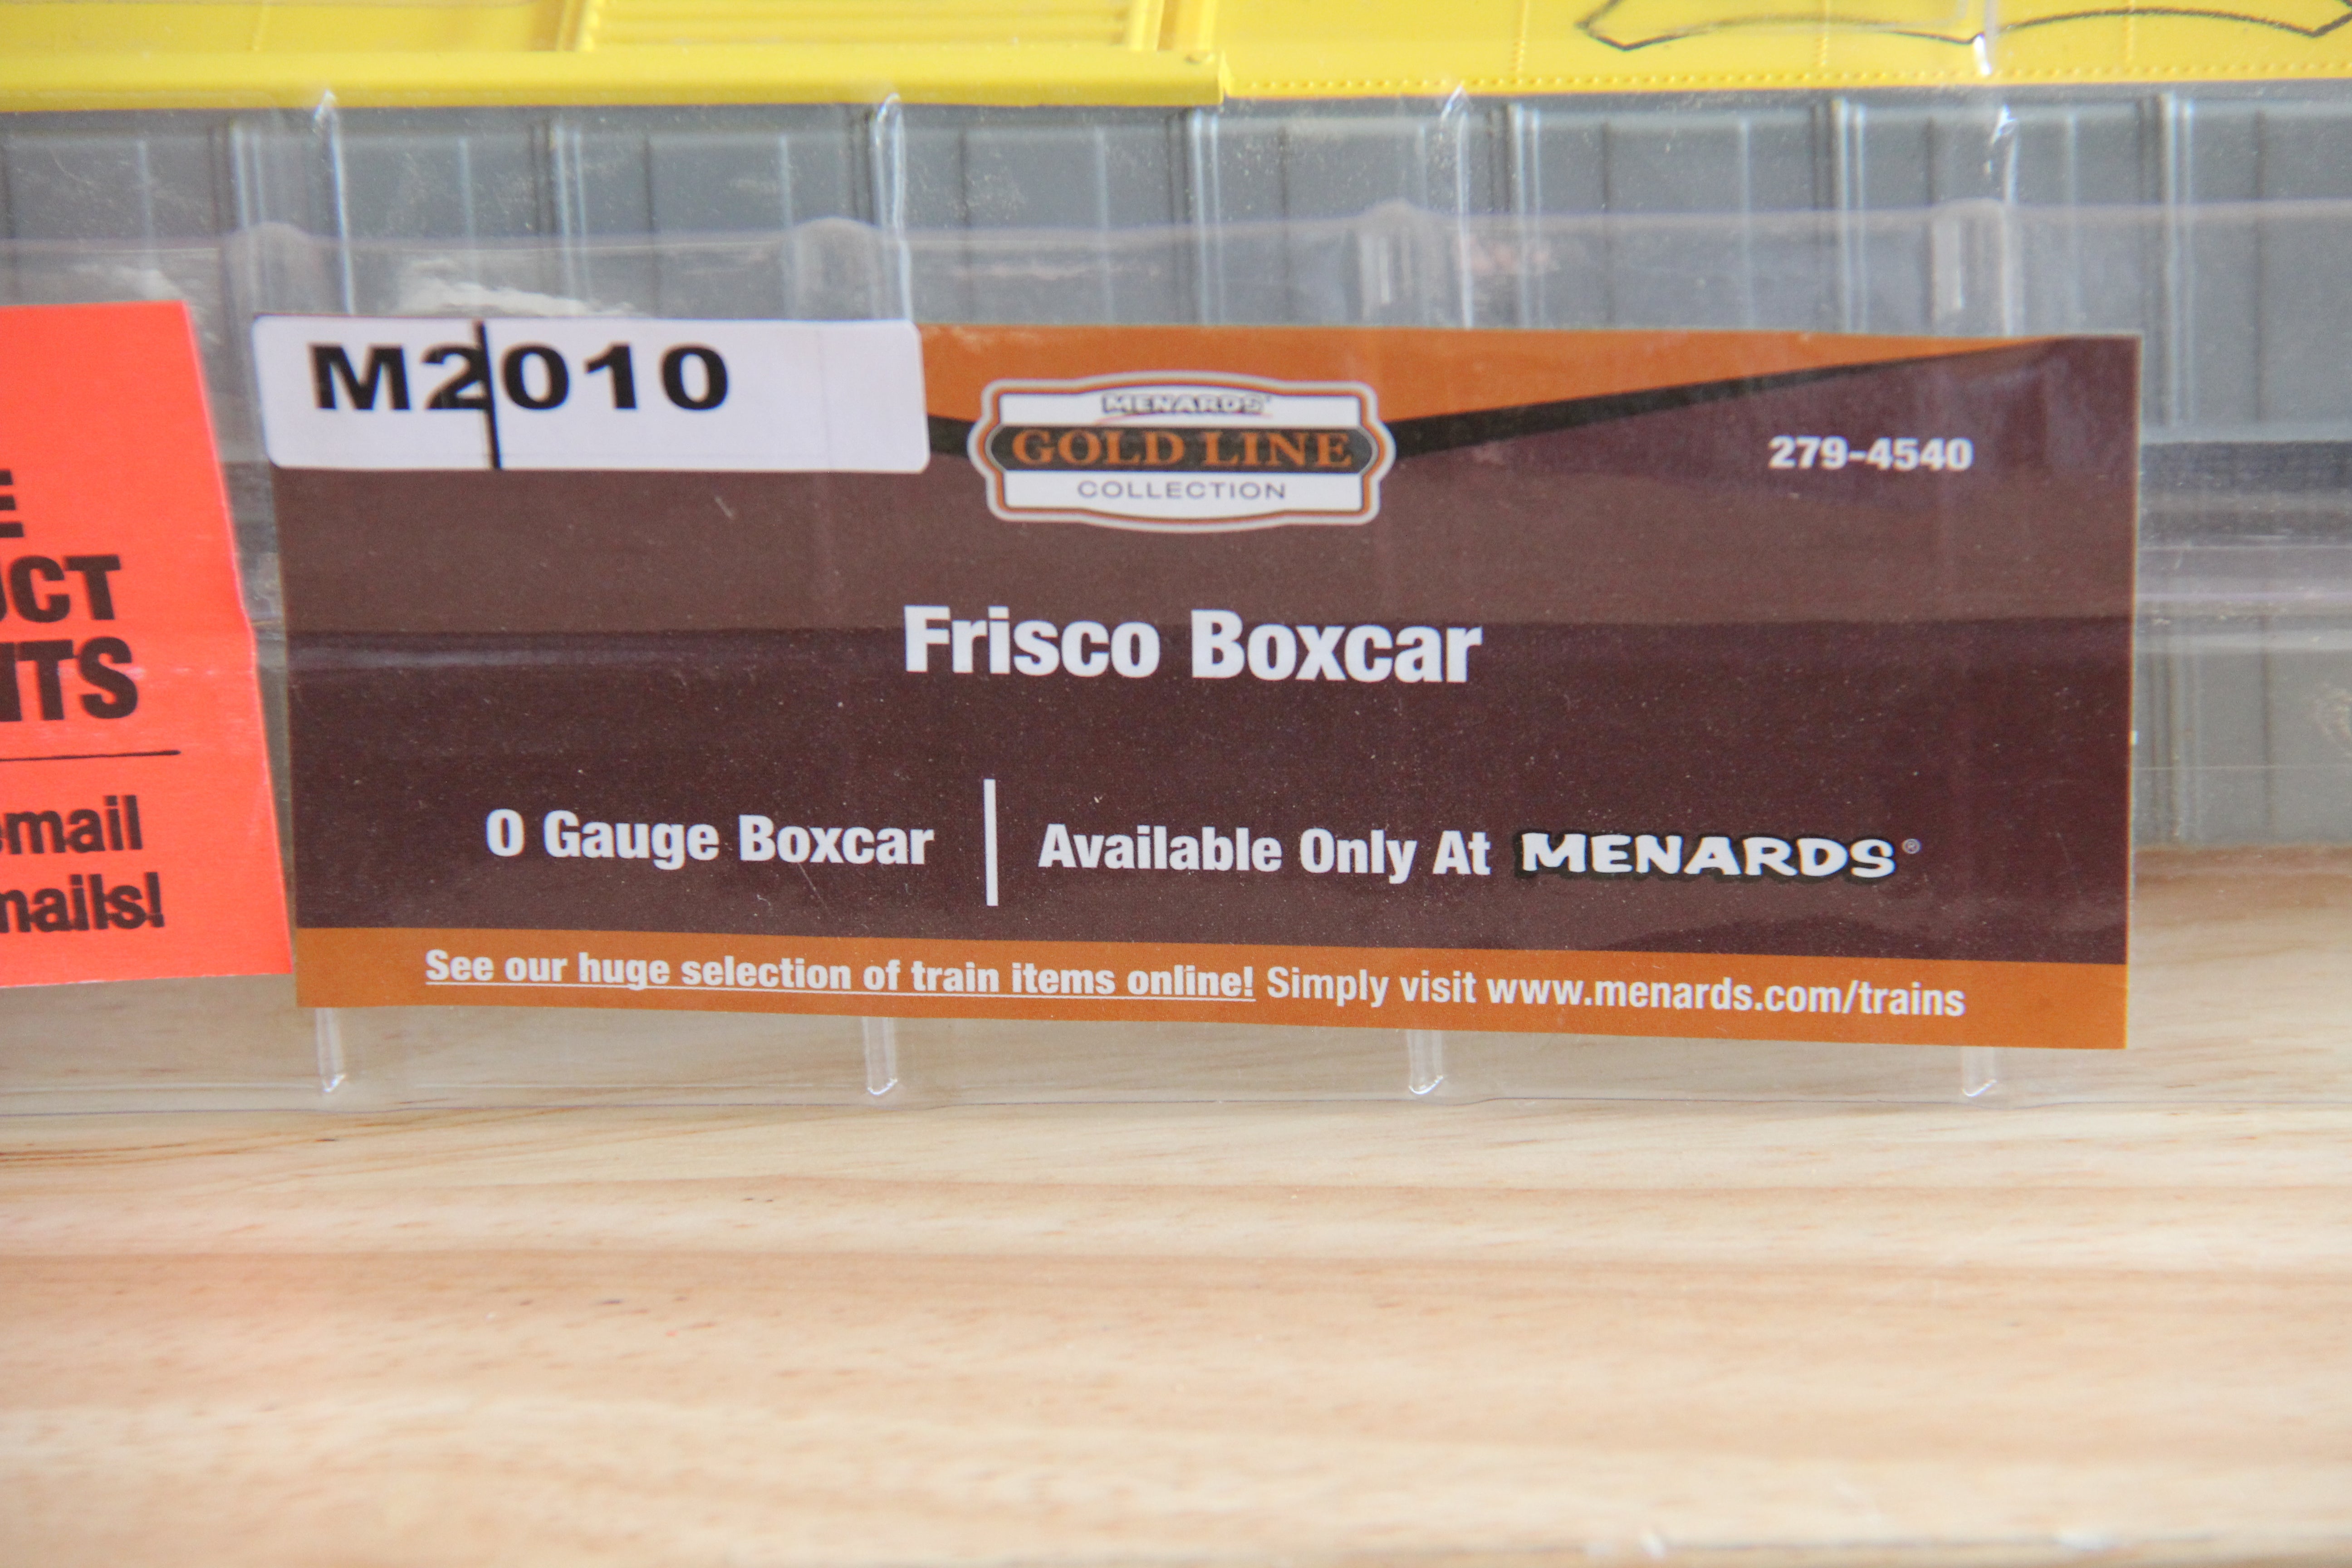 Menards-279-4540 Frisco Boxcar-Second hand-M2010